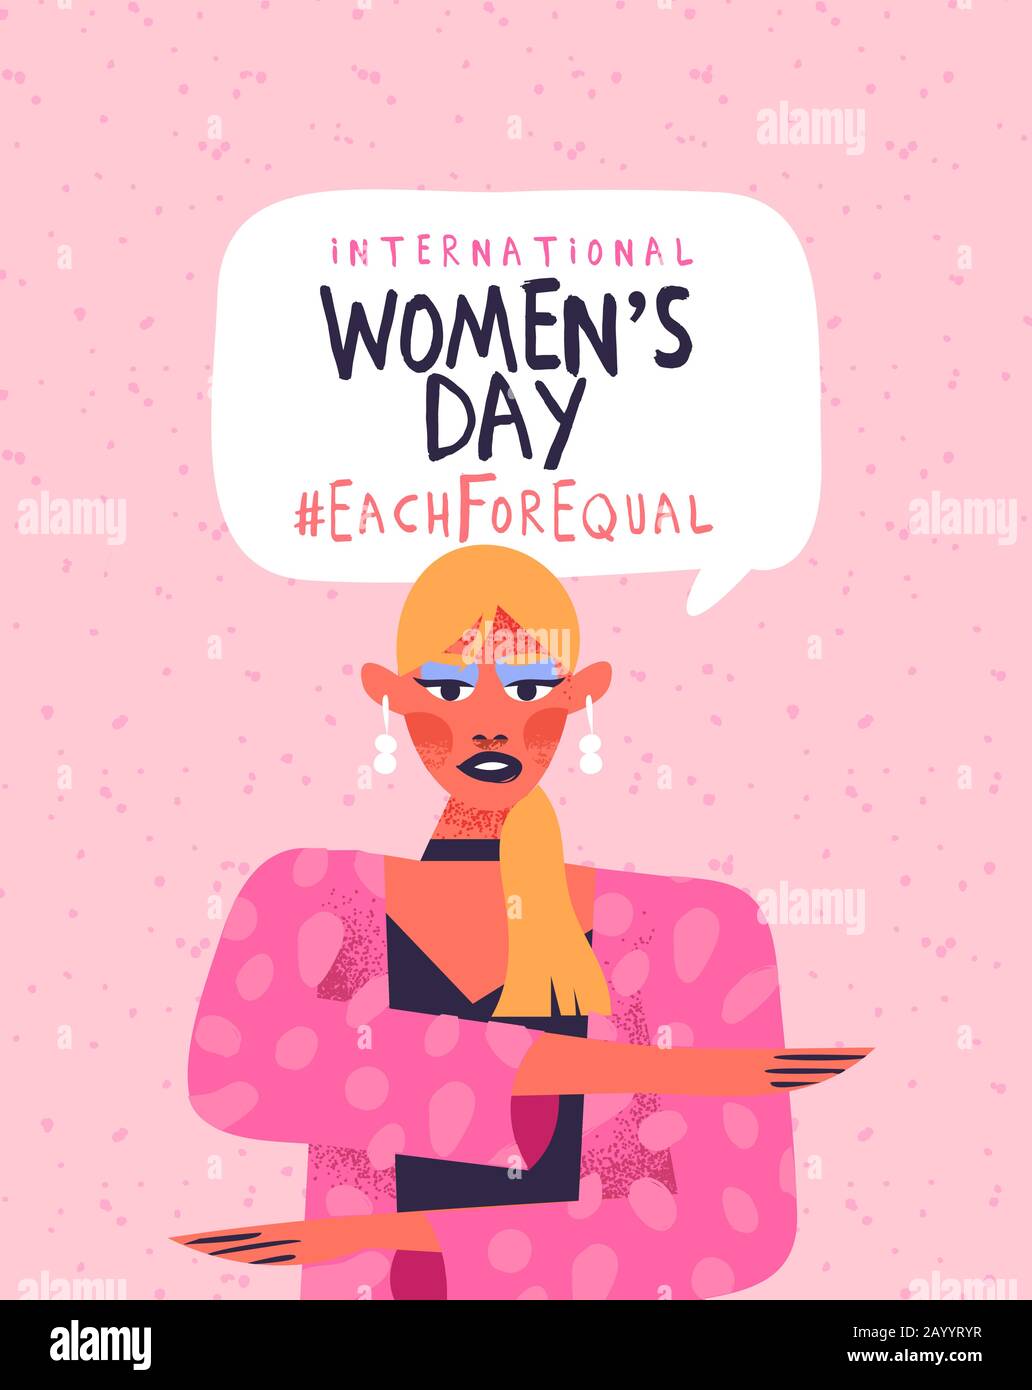 Internationale Frauentag Illustration. Feministische Frauen-Figur, die Gleichheits-Arm-Geste macht, jeweils für ein gleichwertiges Kampagnendesign in rosa Hand gezeichneter Karo Stock Vektor